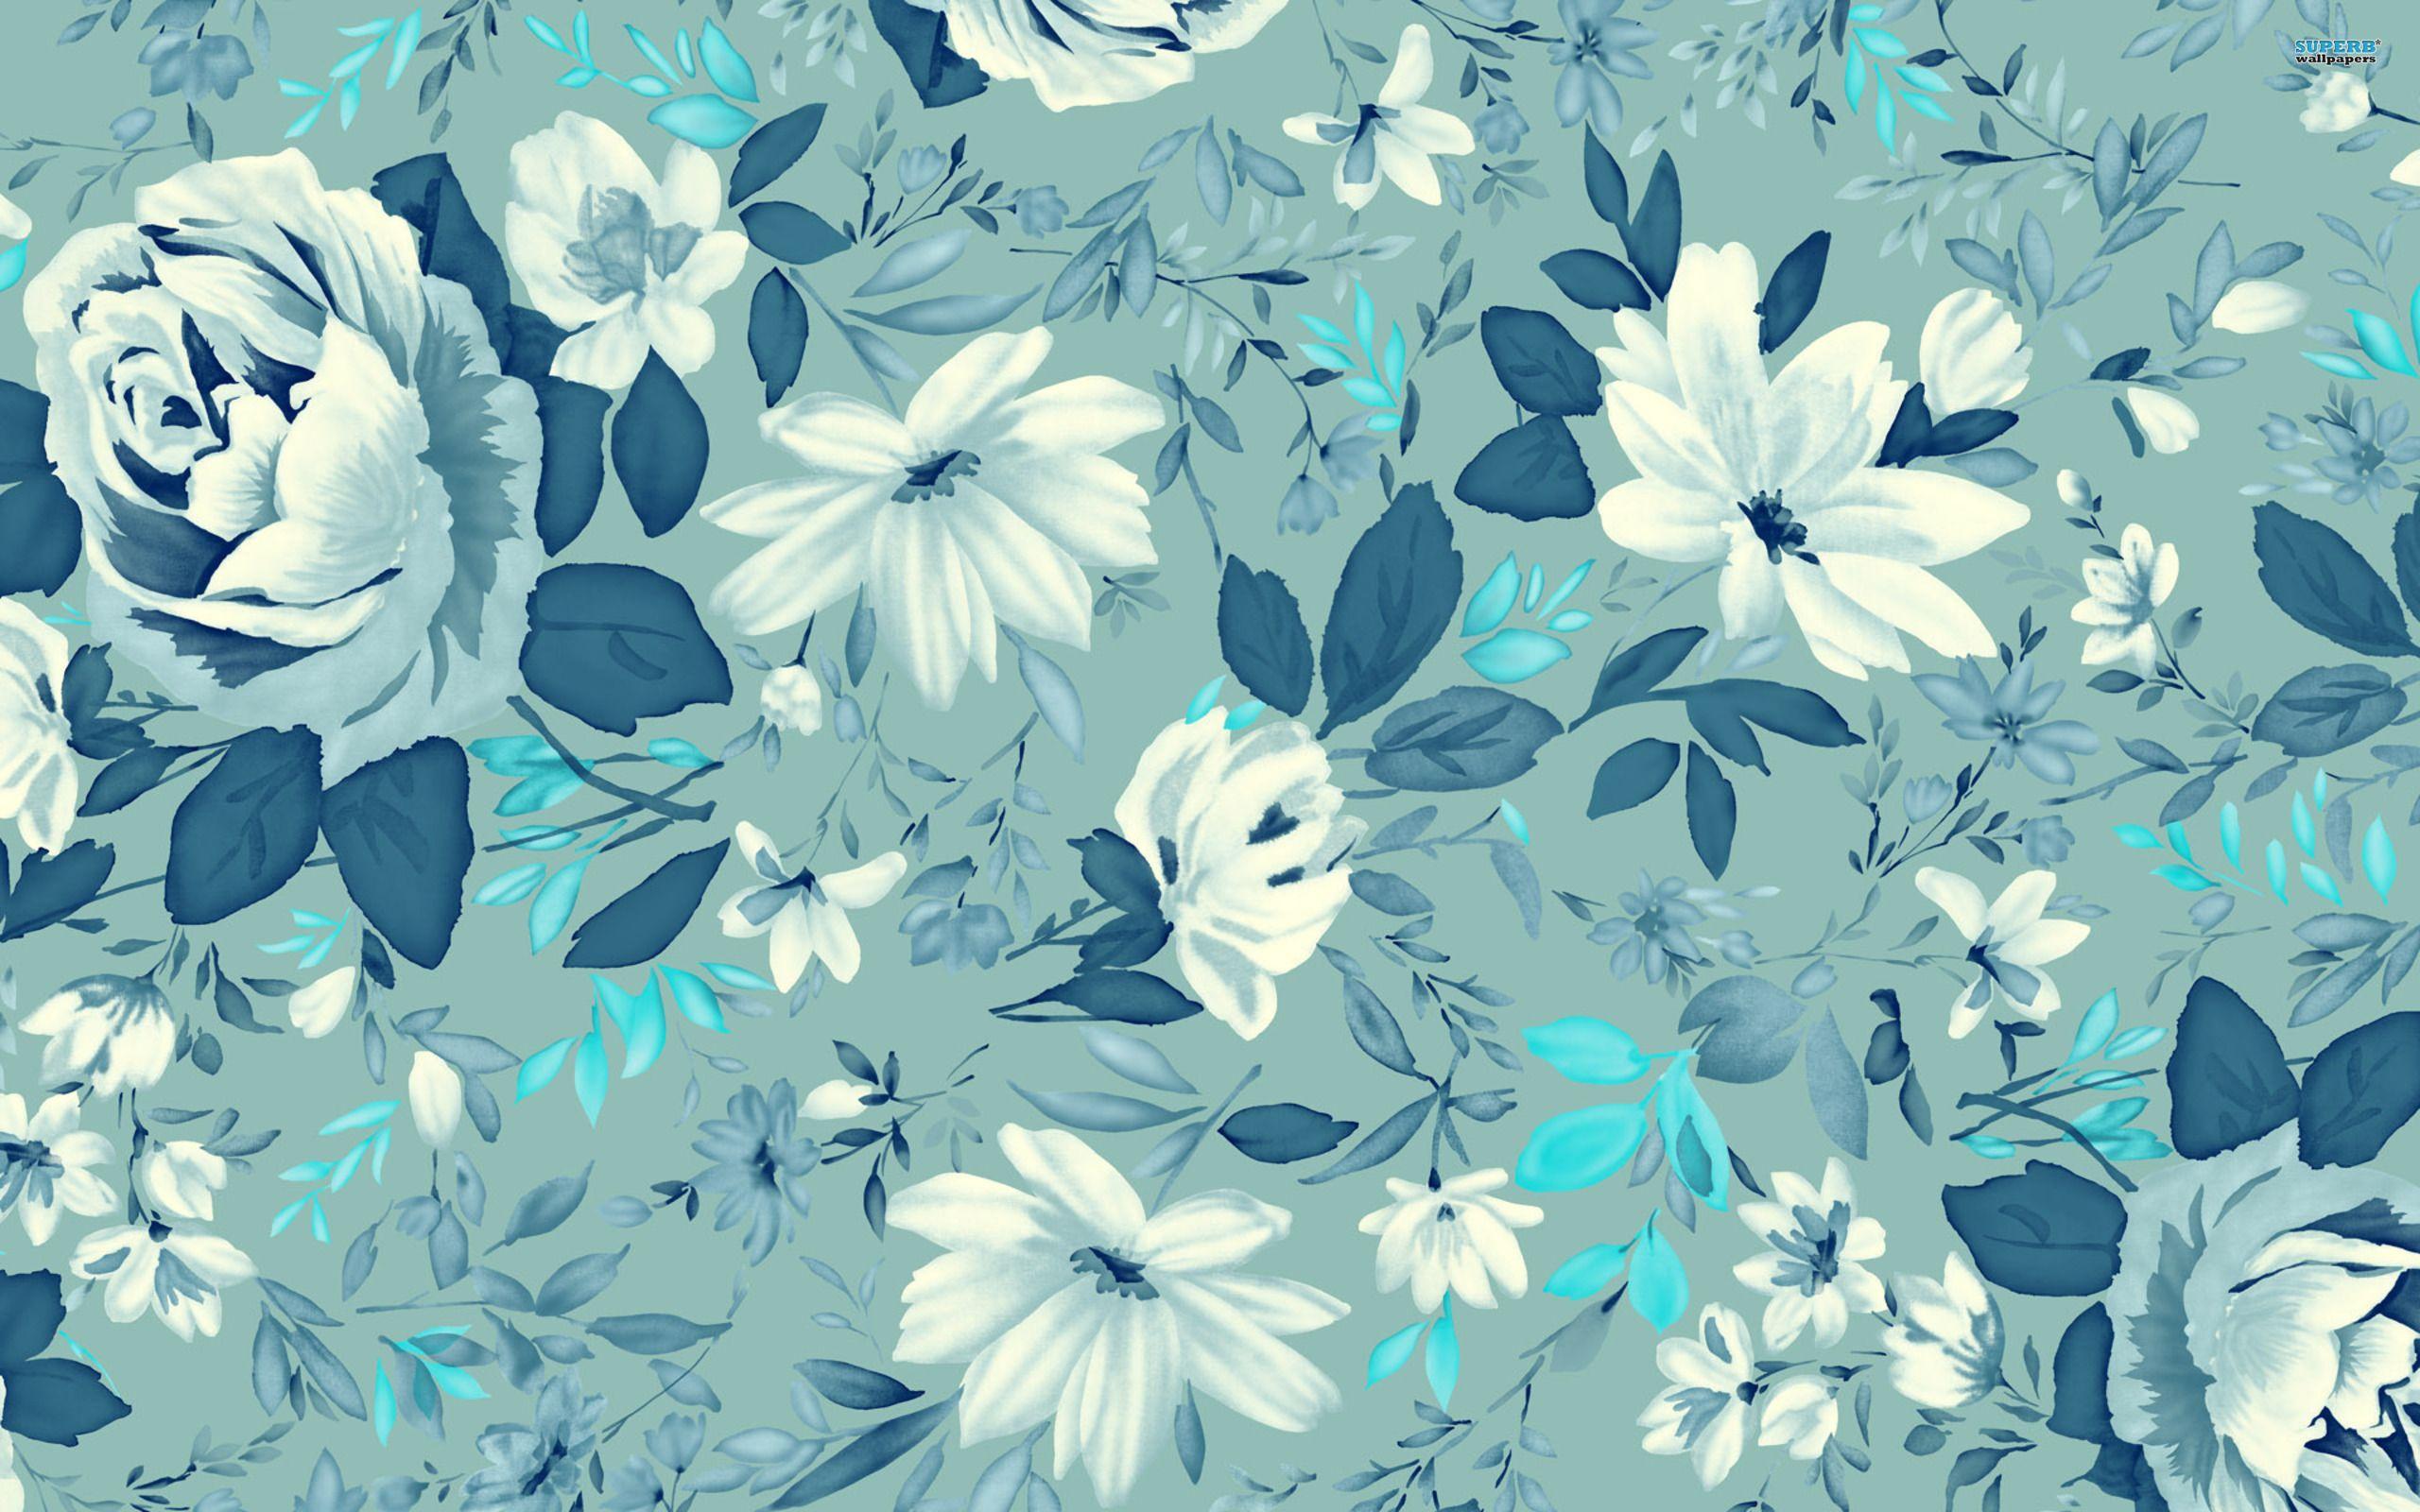 ಌ.blue Flowers Design.ಌ wallpaper free. Floral pattern